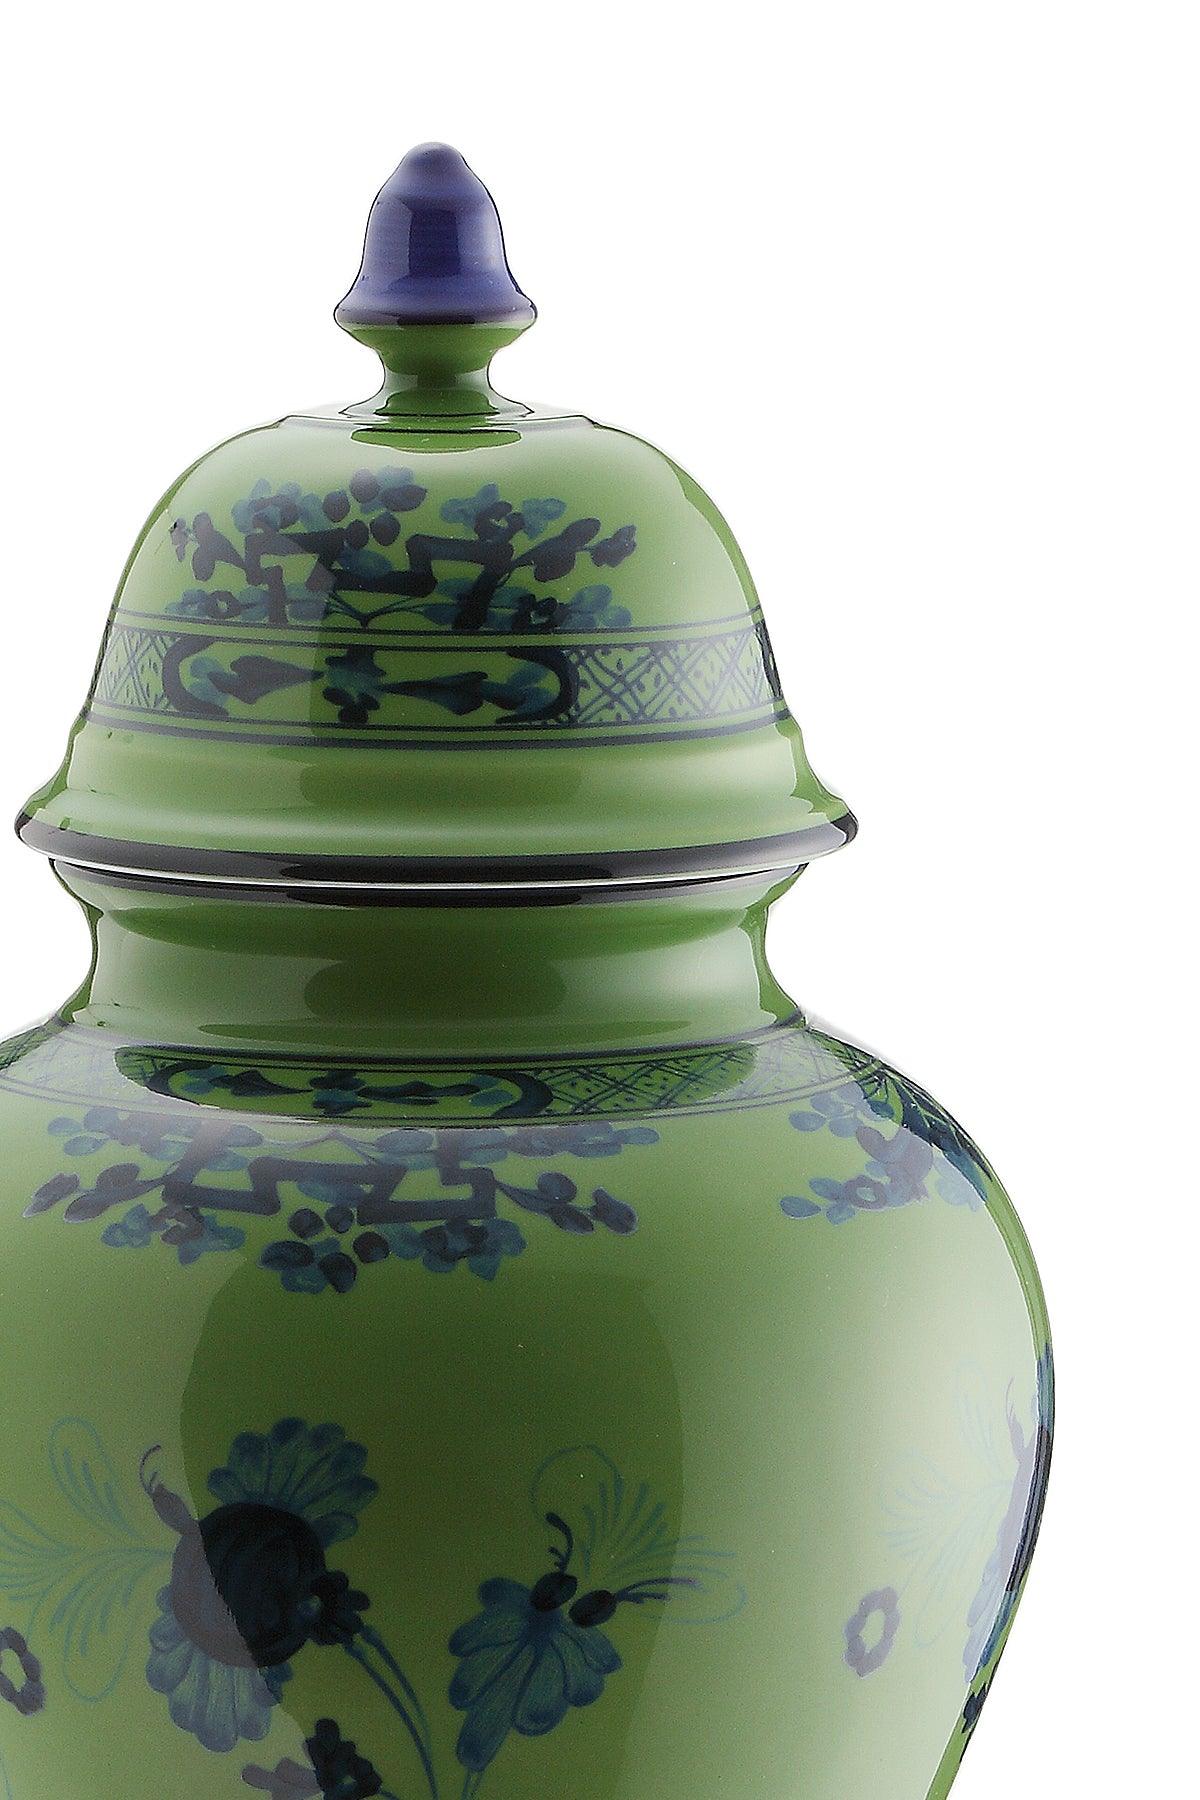 Ginori 1735 Potiche Vase With Cover Oriente Italiano H 31 Cm - JOHN JULIA